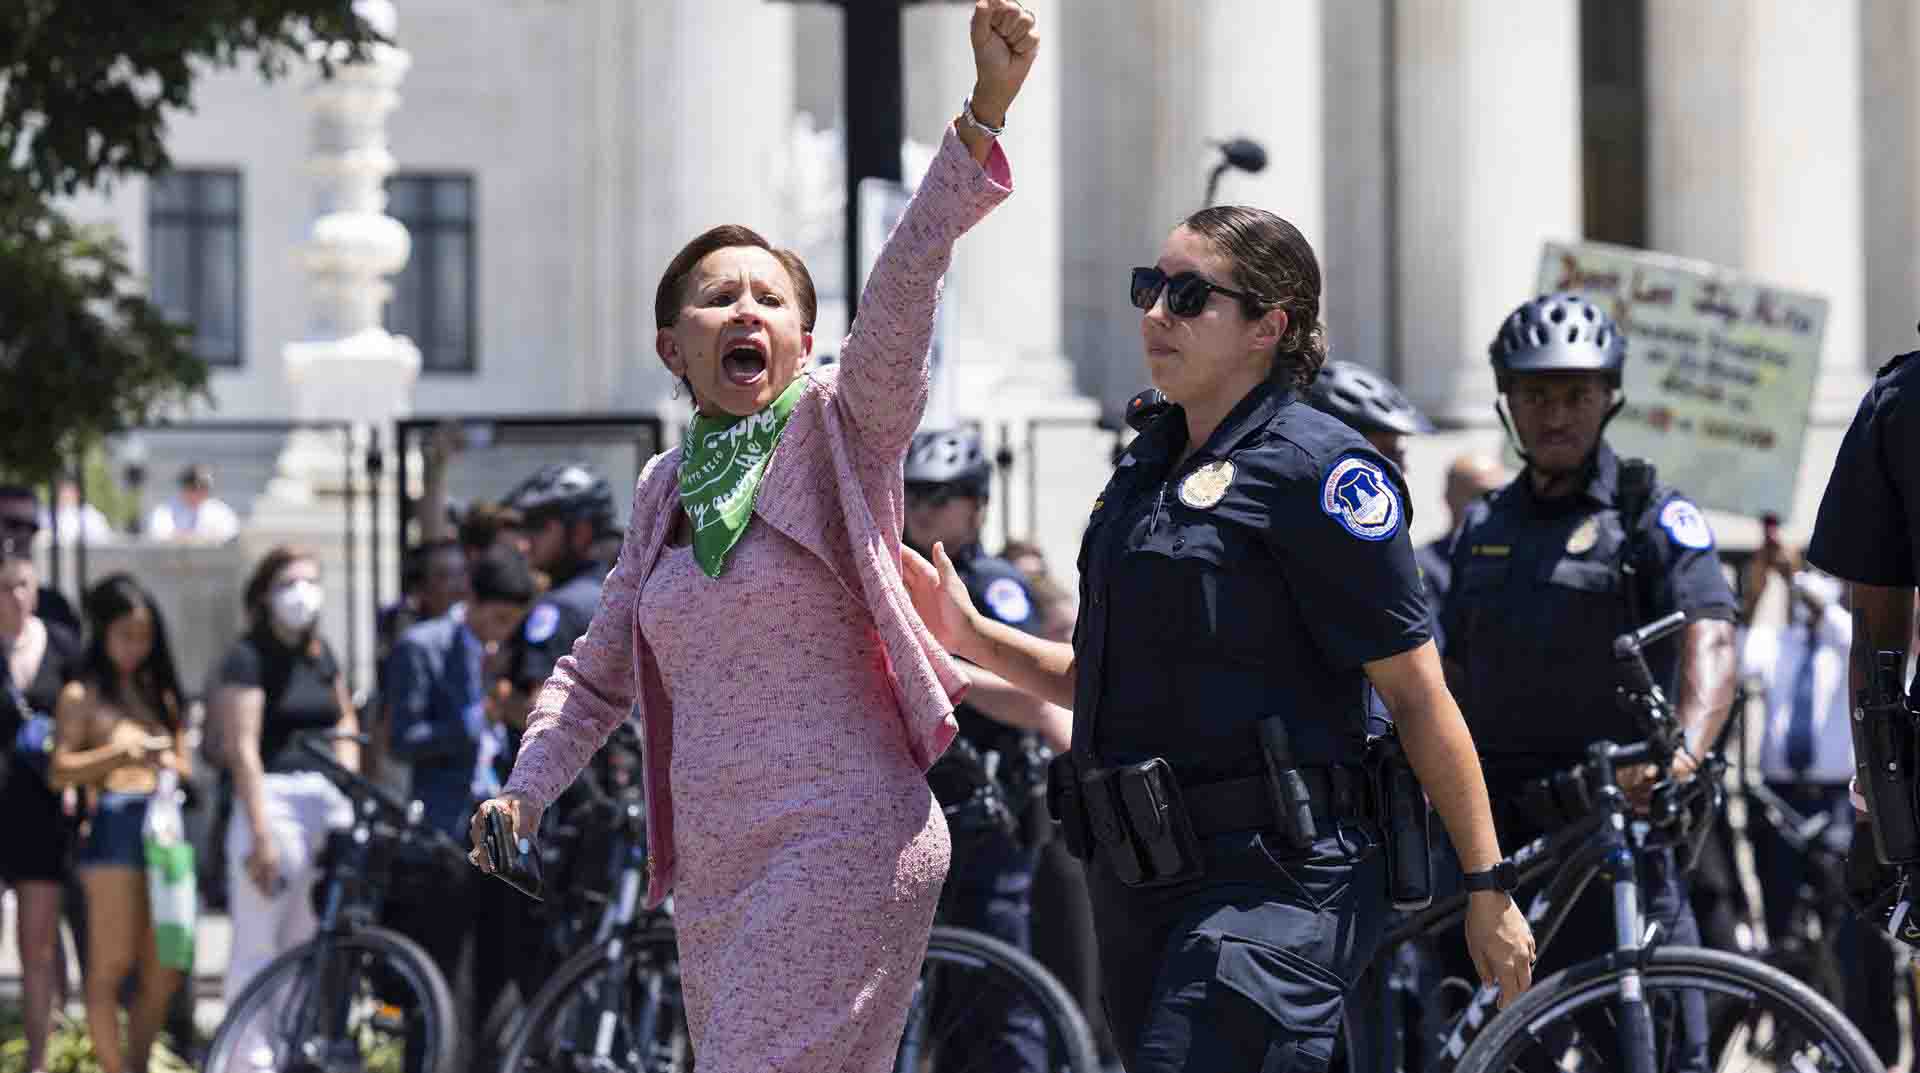 La congresista demócrata Nydia Velázquez es detenida frente a la Corte Suprema mientras protestaba contra la reciente anulación de la sentencia de 1973 en el caso "Roe contra Wade". Foto: EFE.